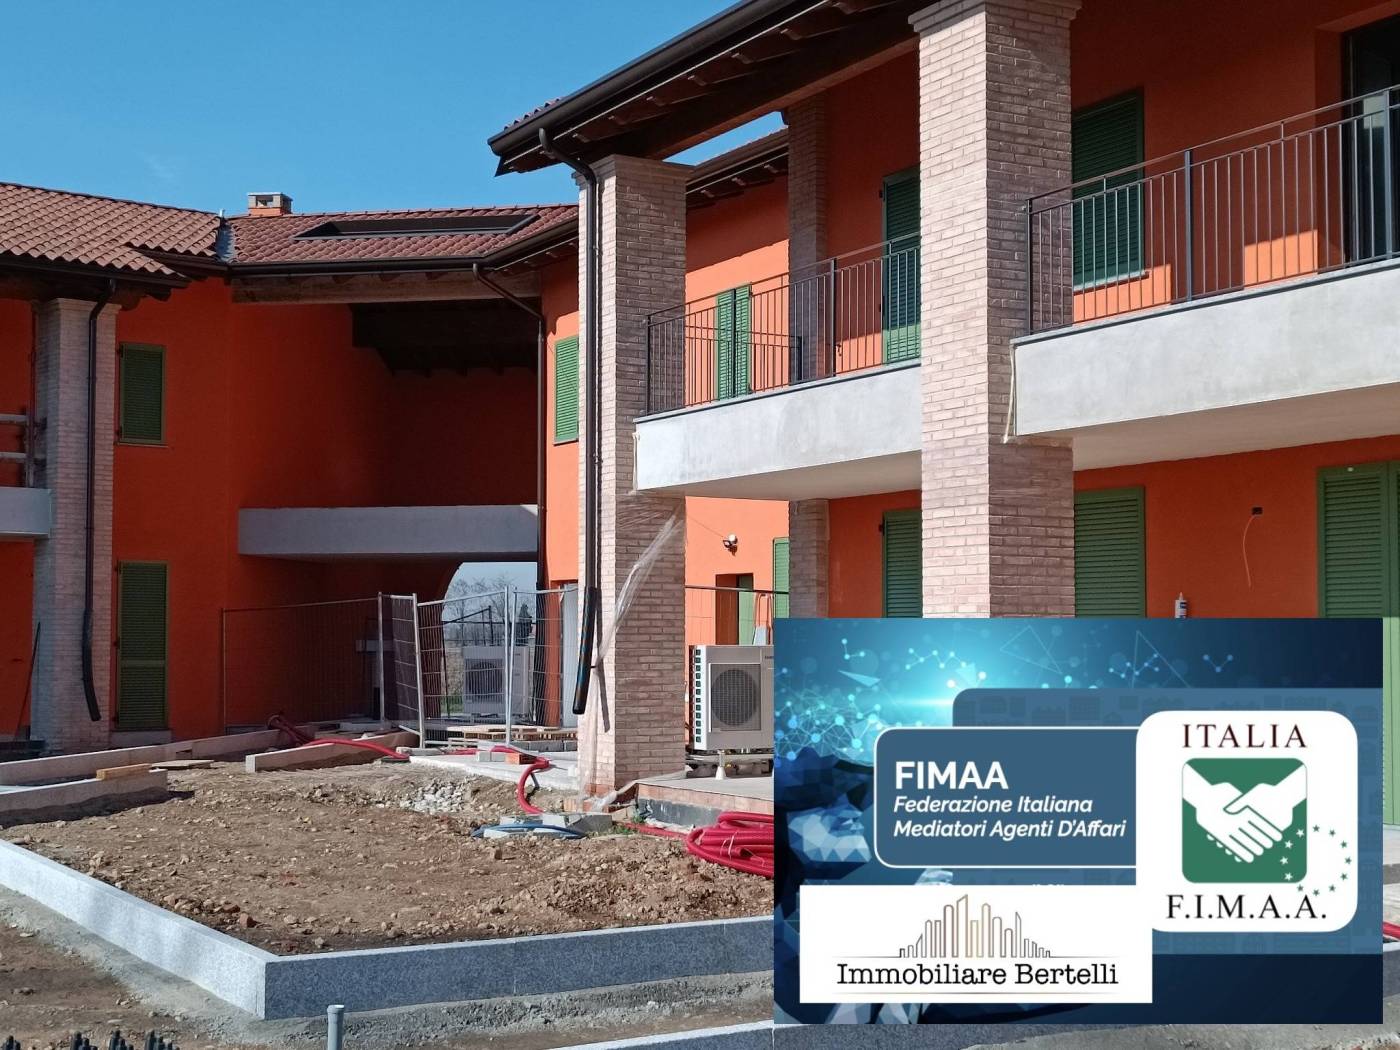 - Immobiliare Bertelli propone in fase di realizzazione una nuova iniziativa denominata  Le Residenze in Cascina Appartamento di mq. 111 